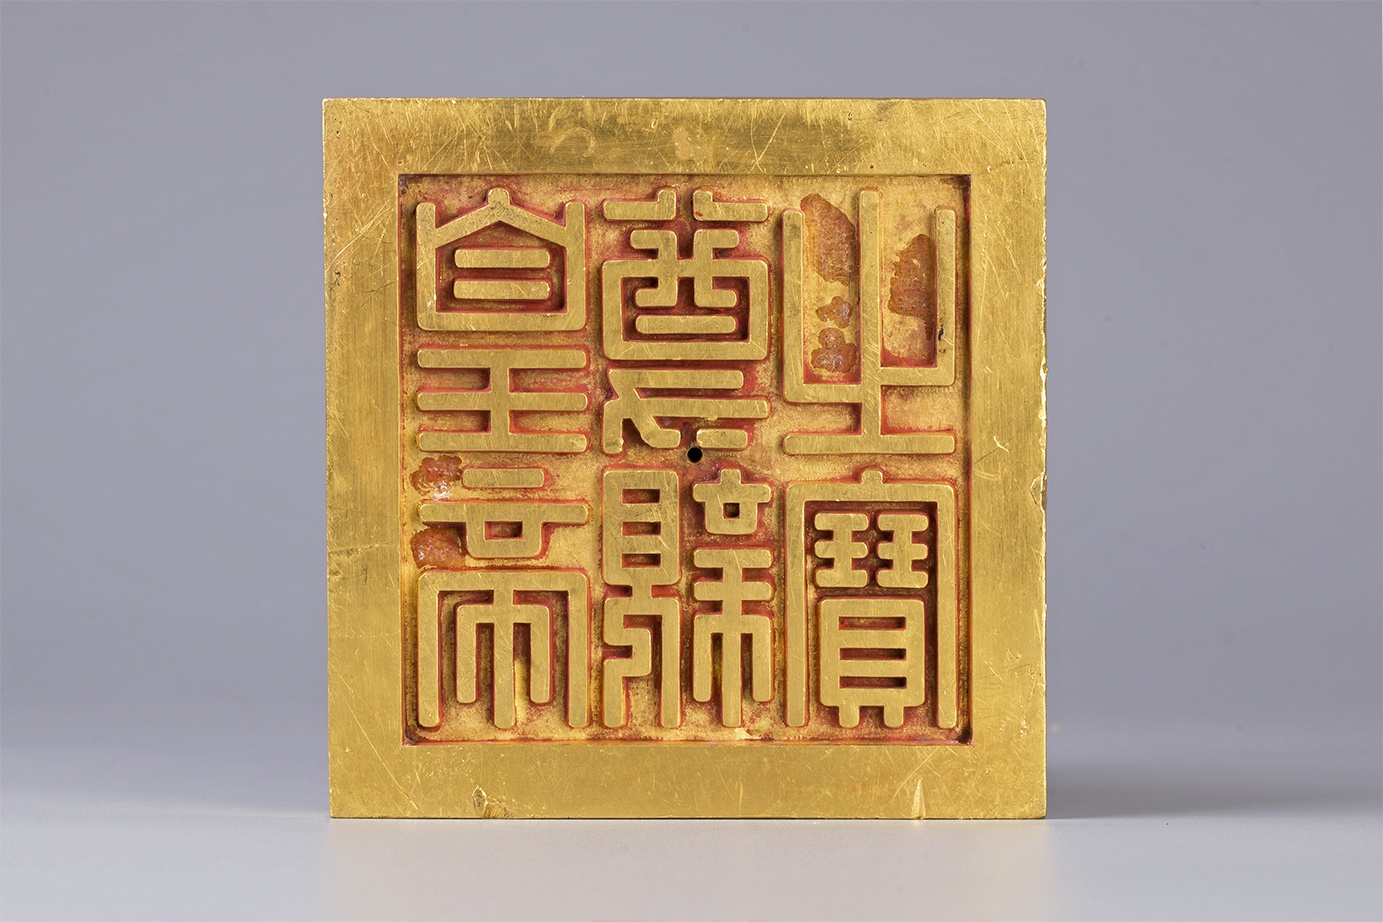 Những bảo vật quốc gia mới: Ấn vàng quý nặng gần 9kg của vua Minh Mạng - ảnh 2